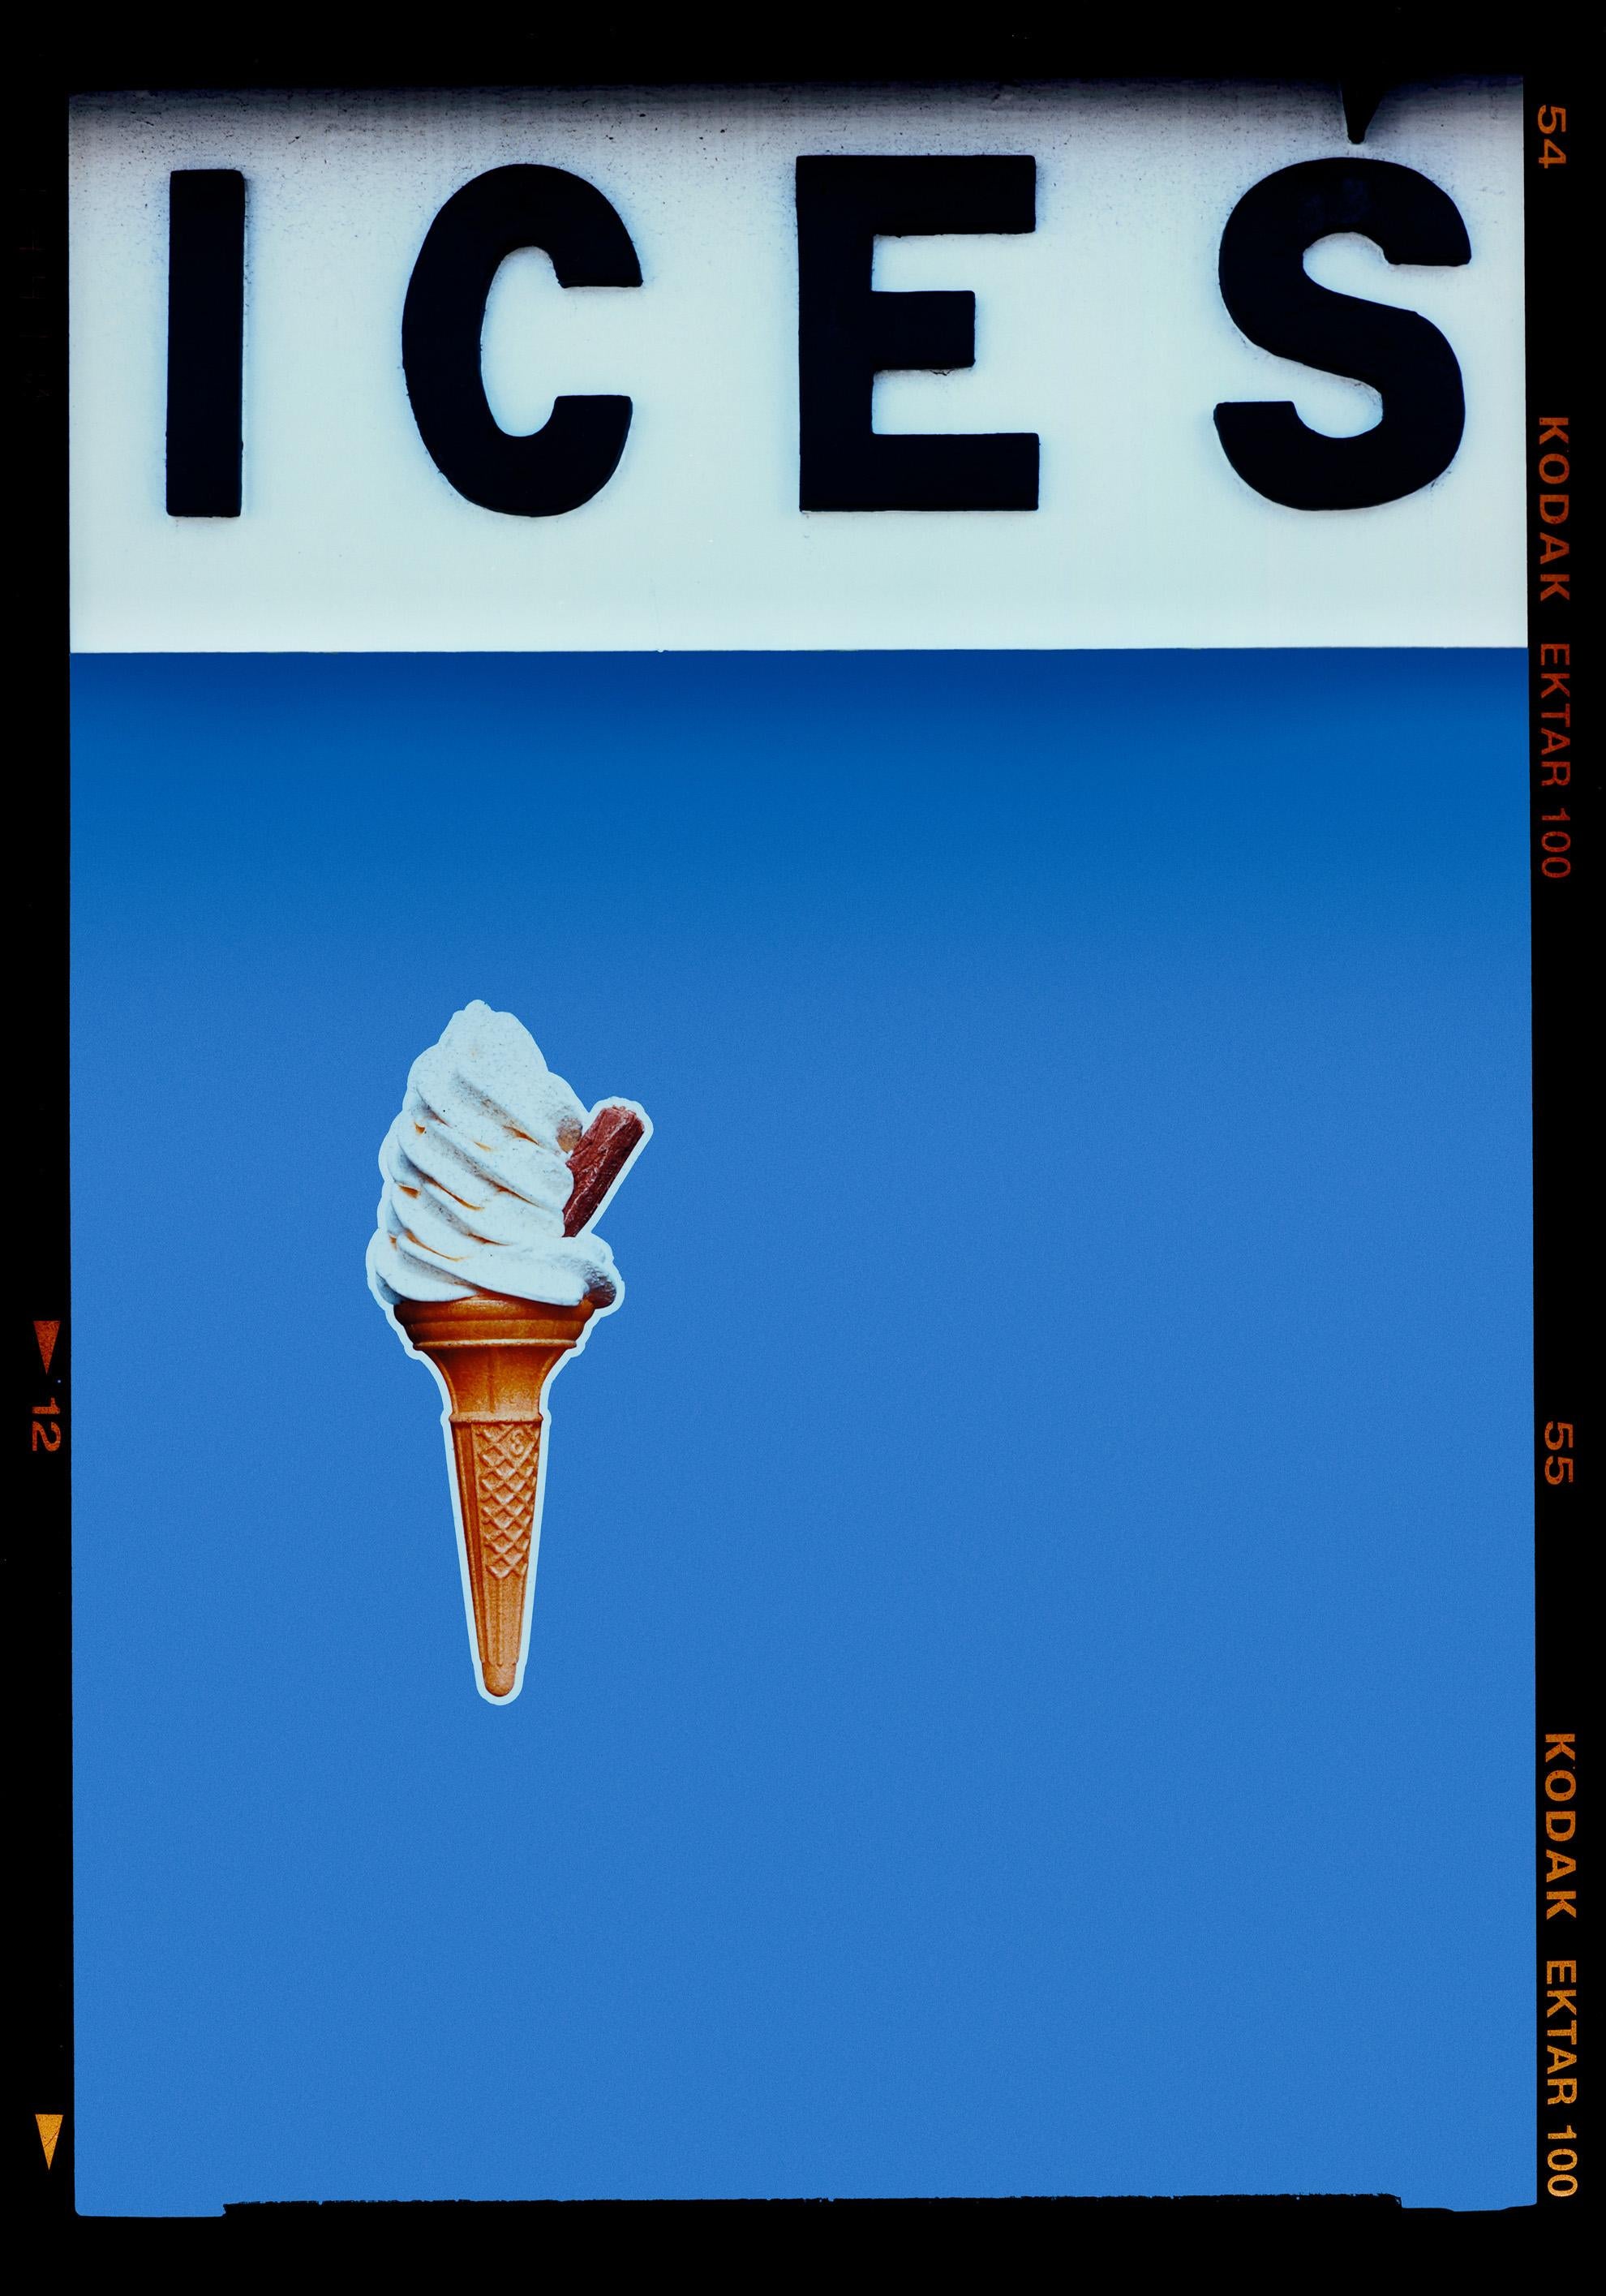 Richard Heeps Print – Ices (Baby Blue), Bexhill-on-Sea – britische Meeresfotografie